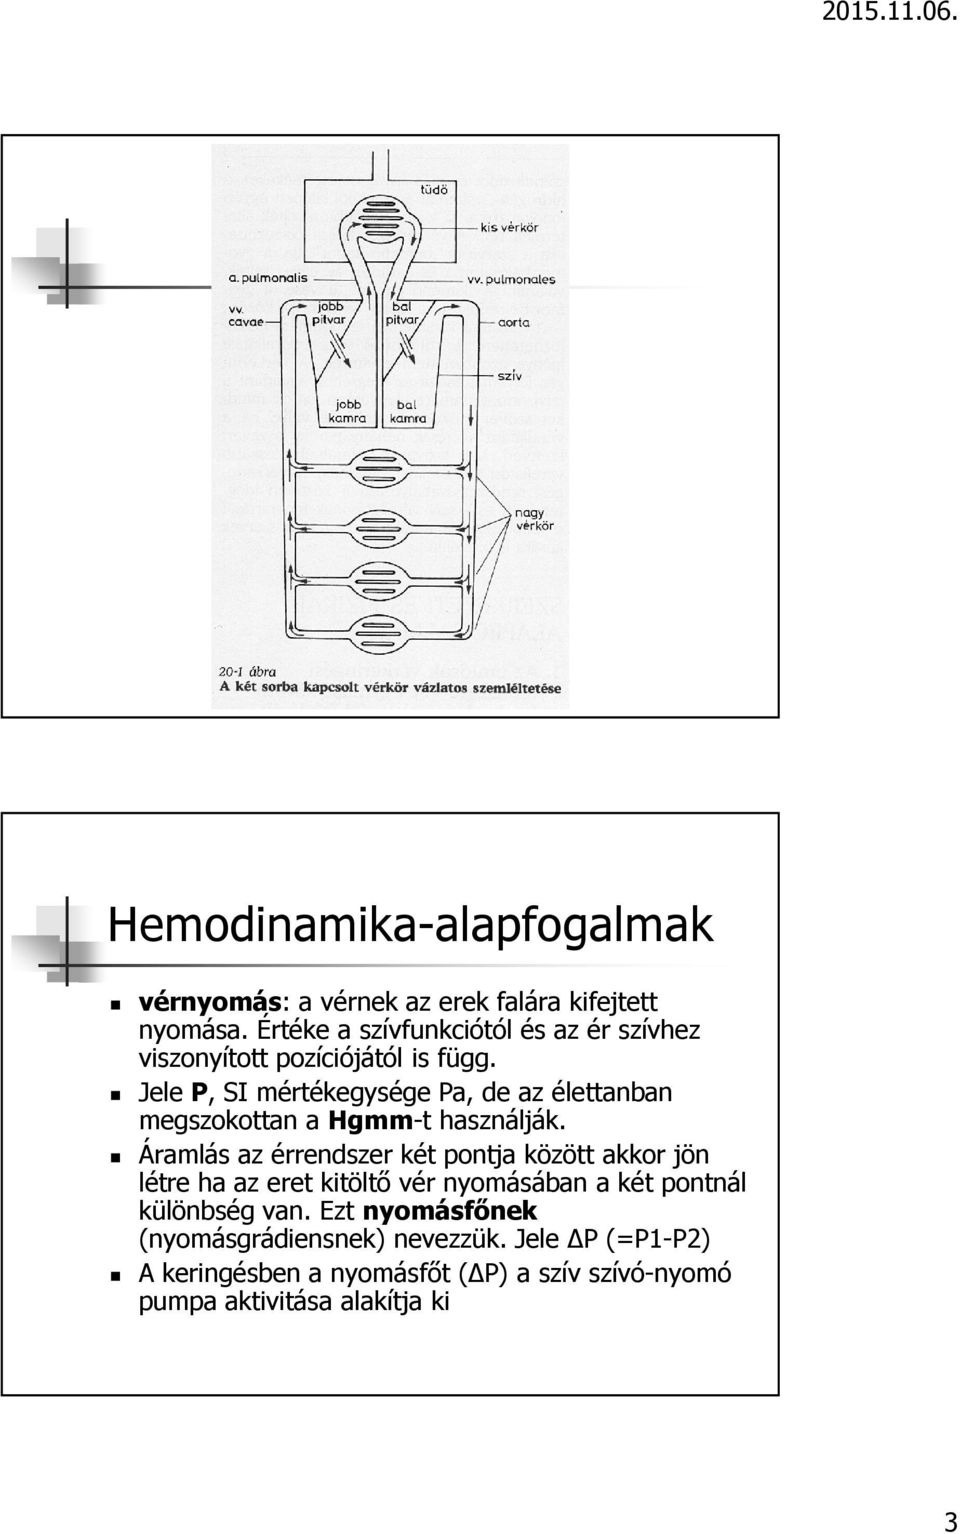 A kardiovaszkuláris rendszer élettana - PDF Ingyenes letöltés